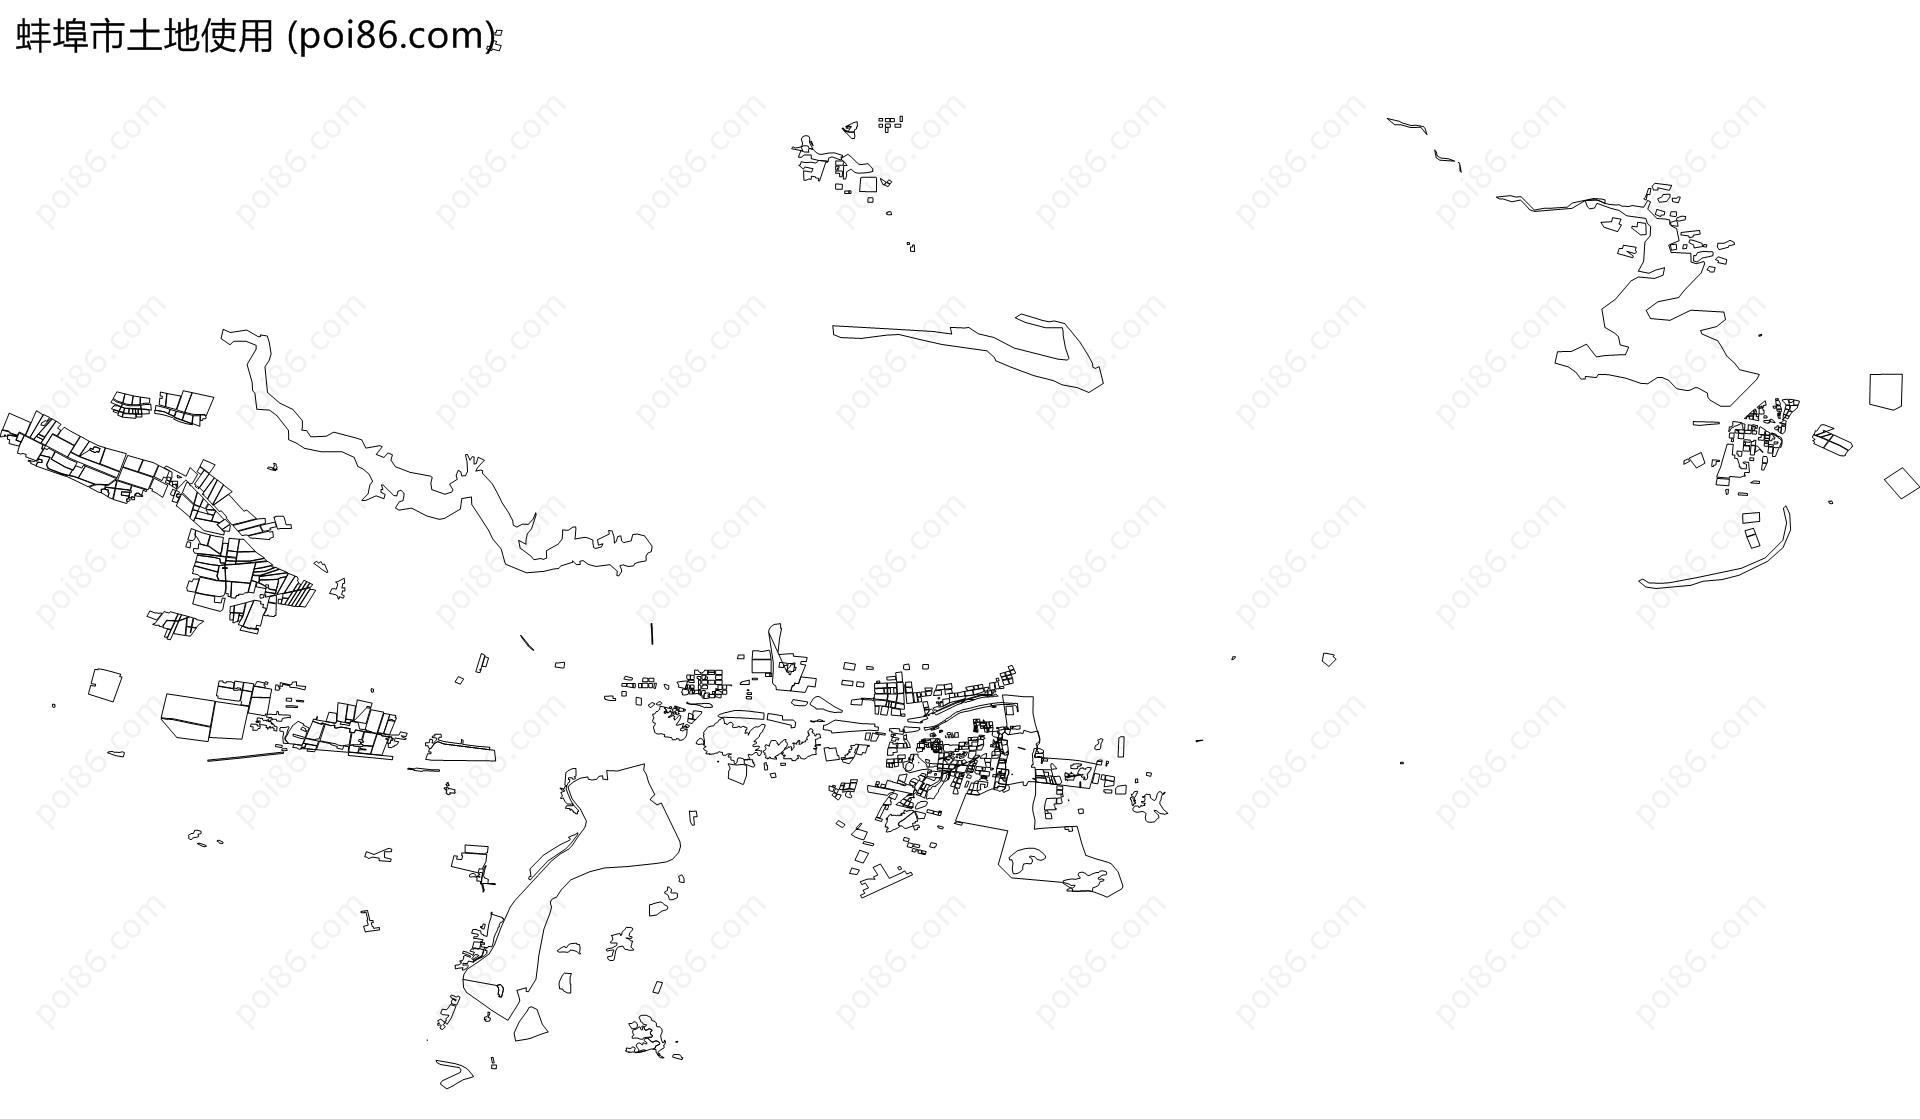 蚌埠市土地使用地图